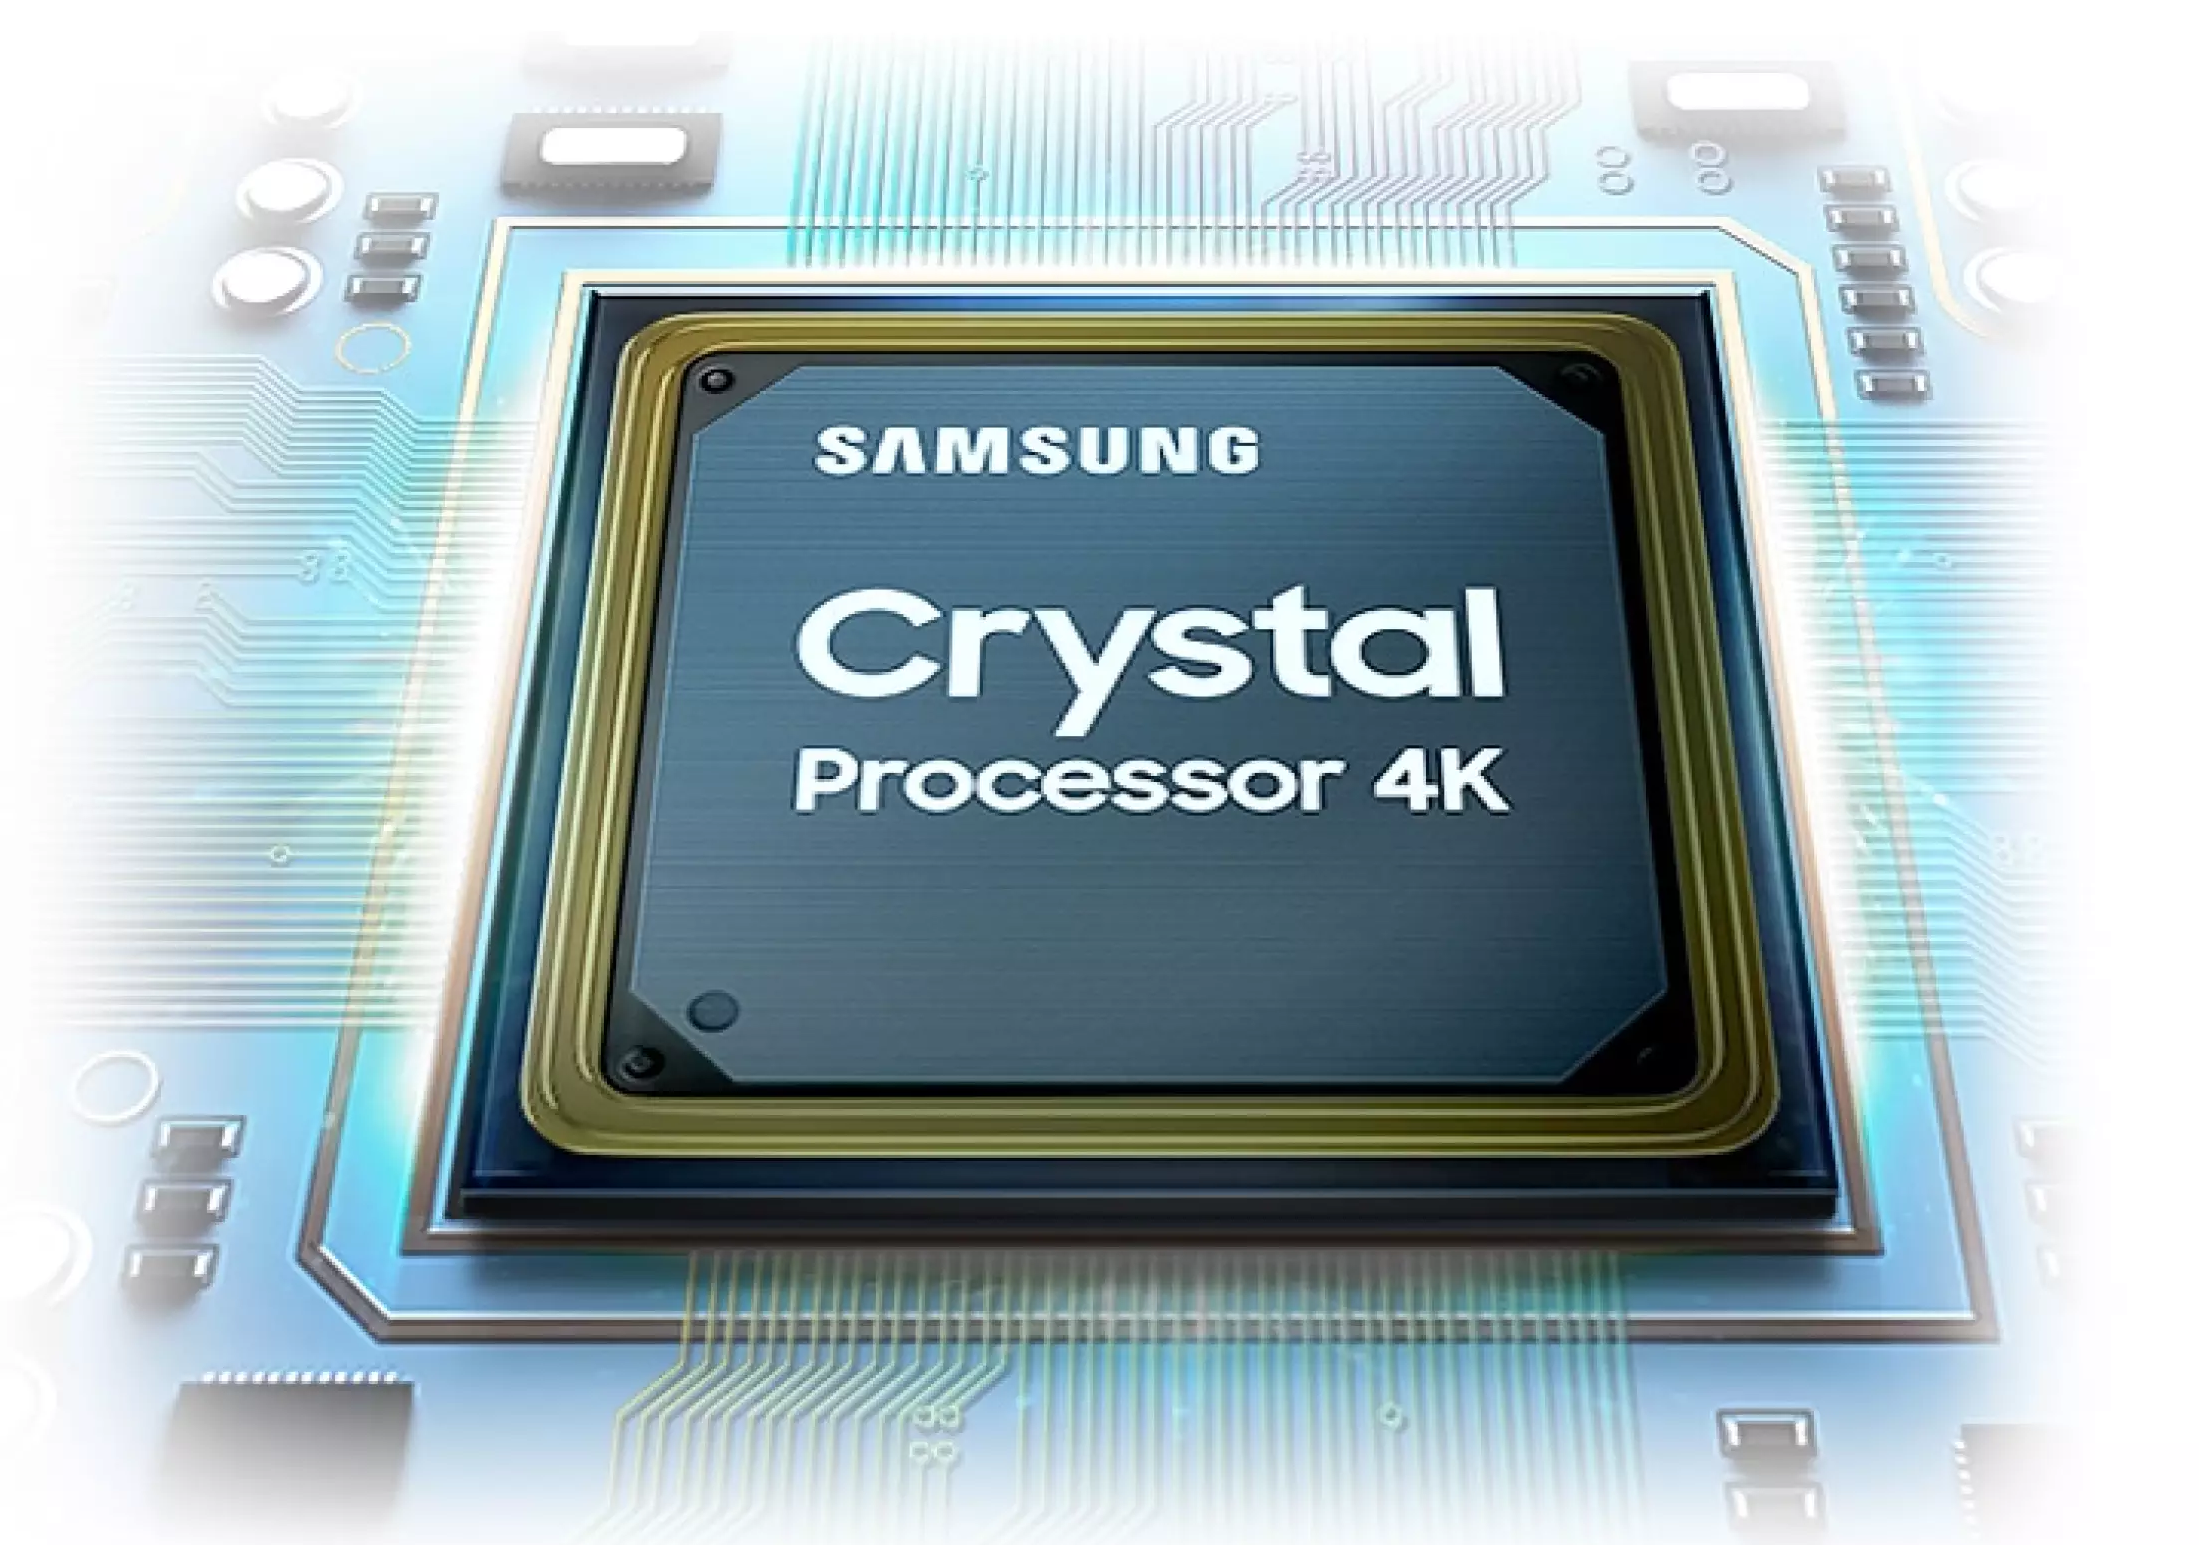 Pomyselnú krv do žíl vháňa televízor Samsung UE50AU7072 špičkový 4jadrový obrazový procesor Crystal 4K, ktorý riadi všetky inovatívne funkcie a technológie používané na vylepšenie prehrávaného videa.